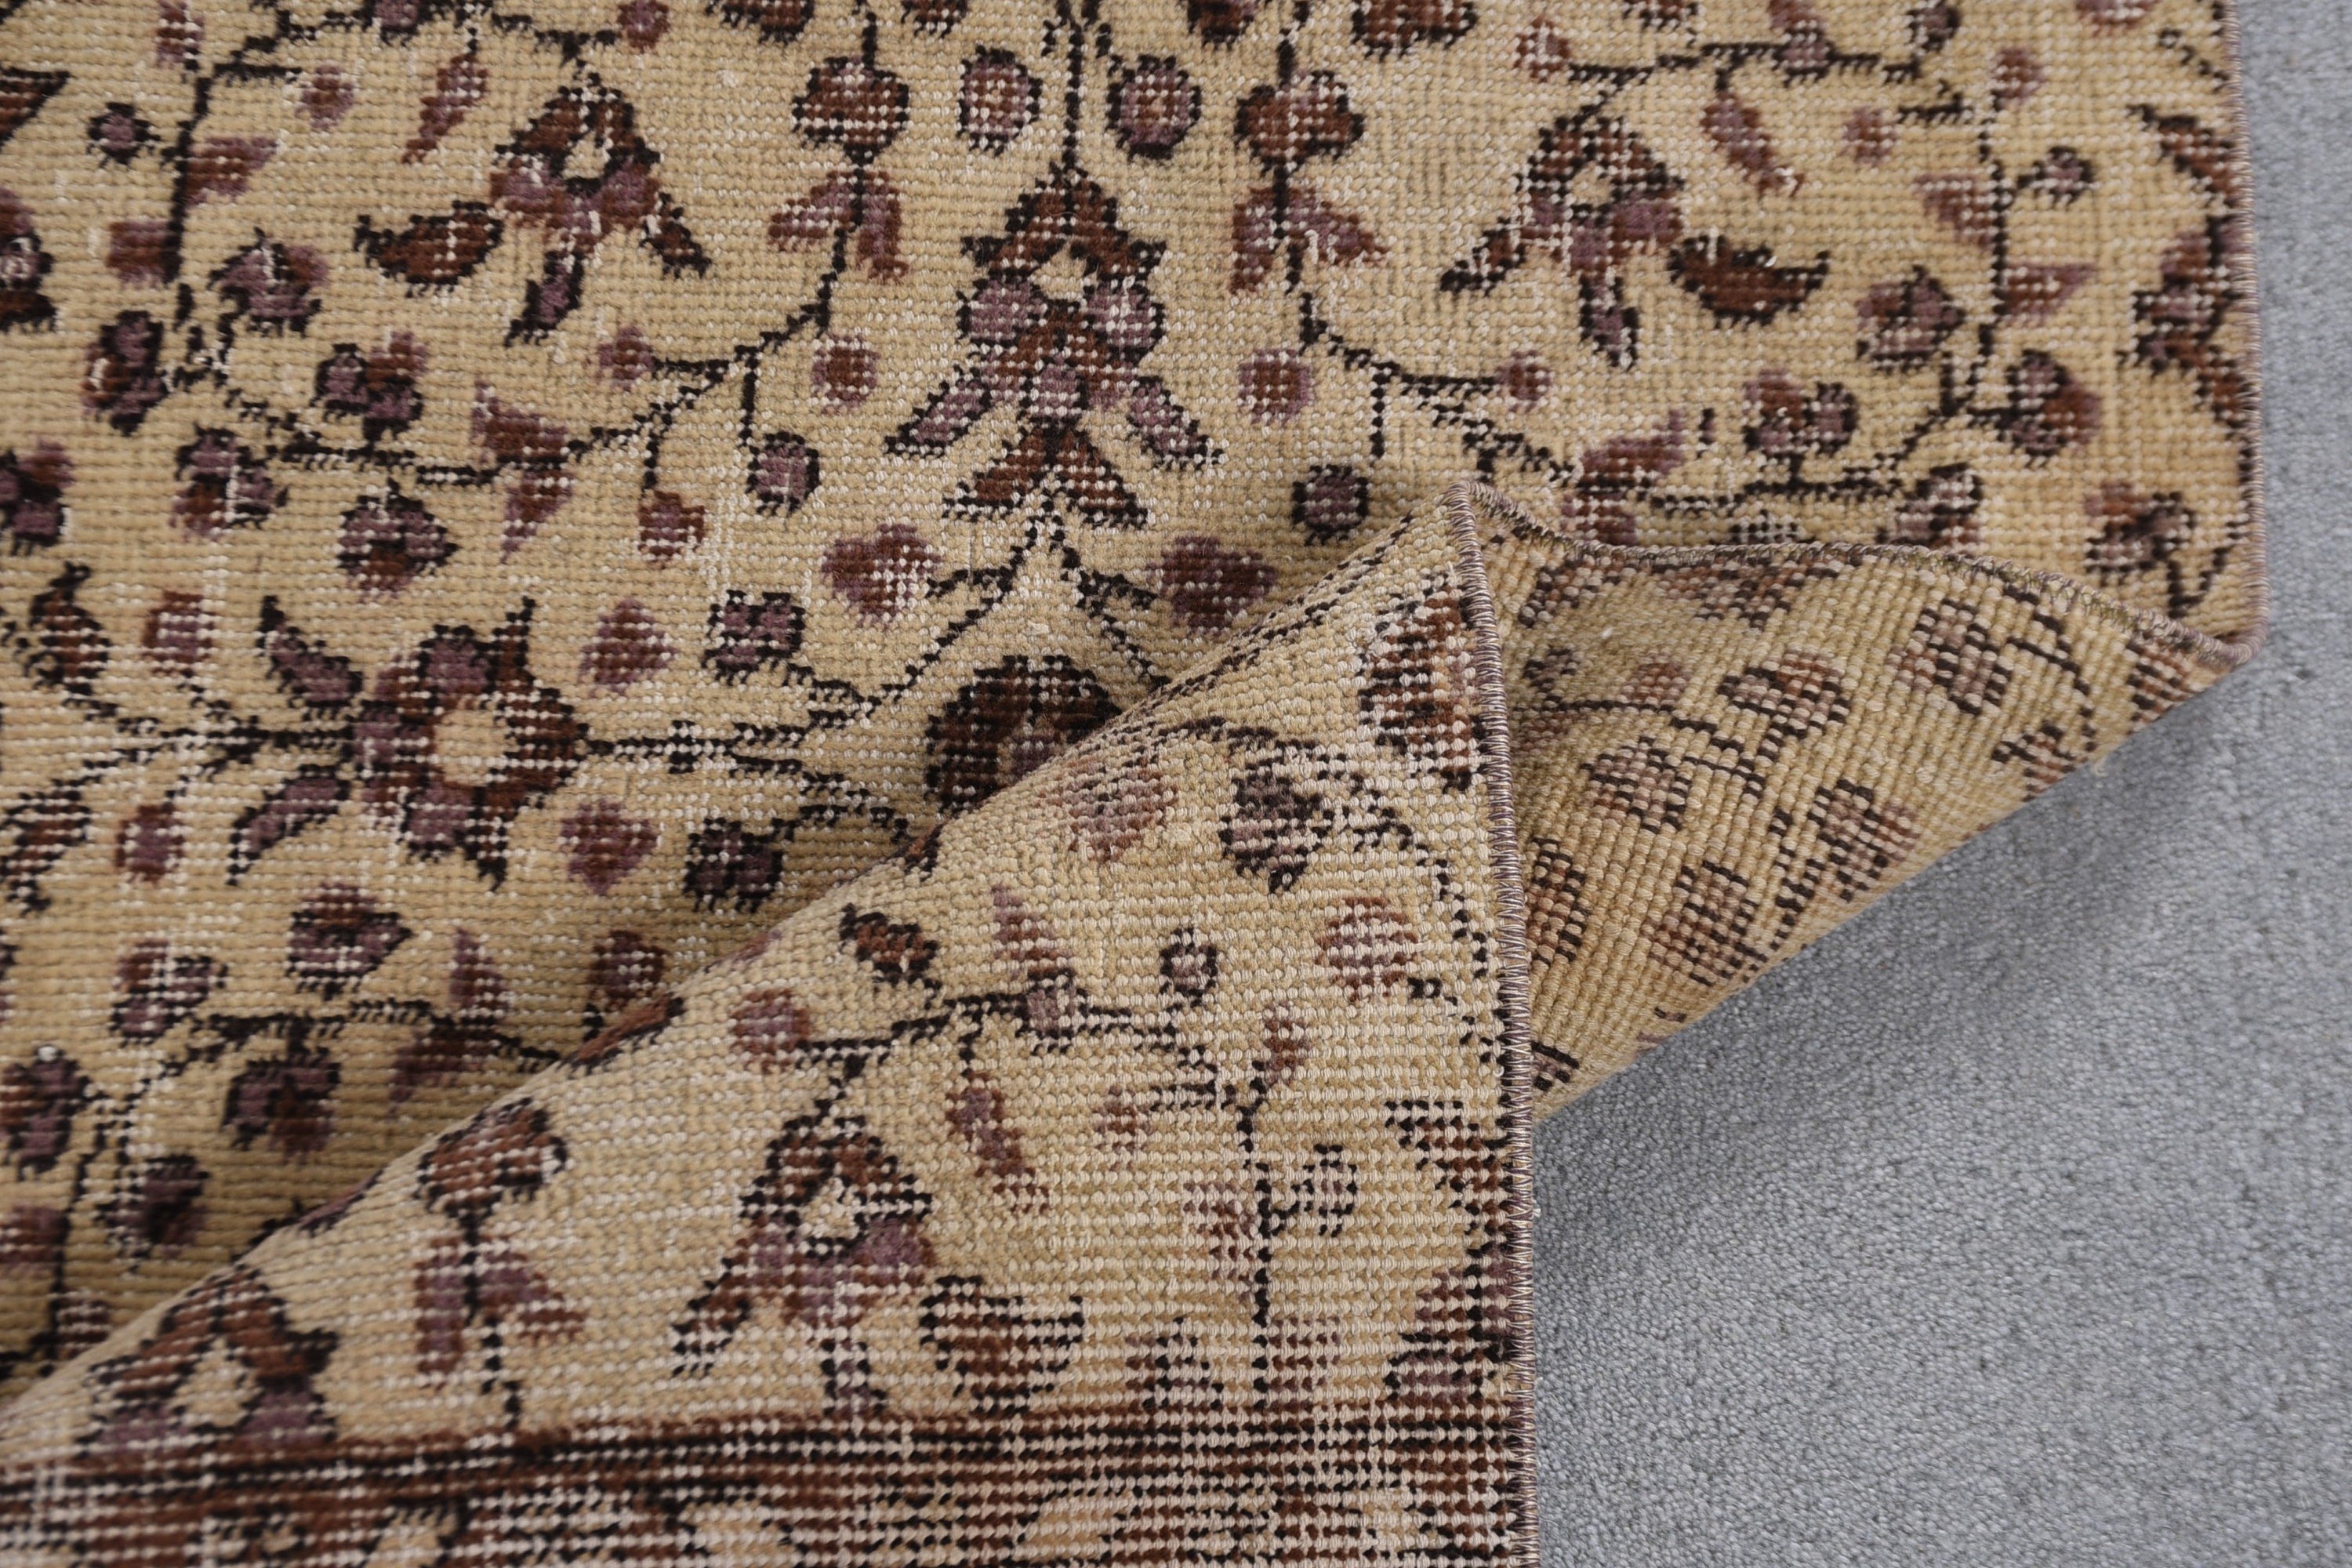 Anatolian Rug, Beige  2x6.8 ft Runner Rugs, Hallway Rug, Handwoven Rug, Turkish Rugs, Kitchen Rugs, Stair Rug, Vintage Rug